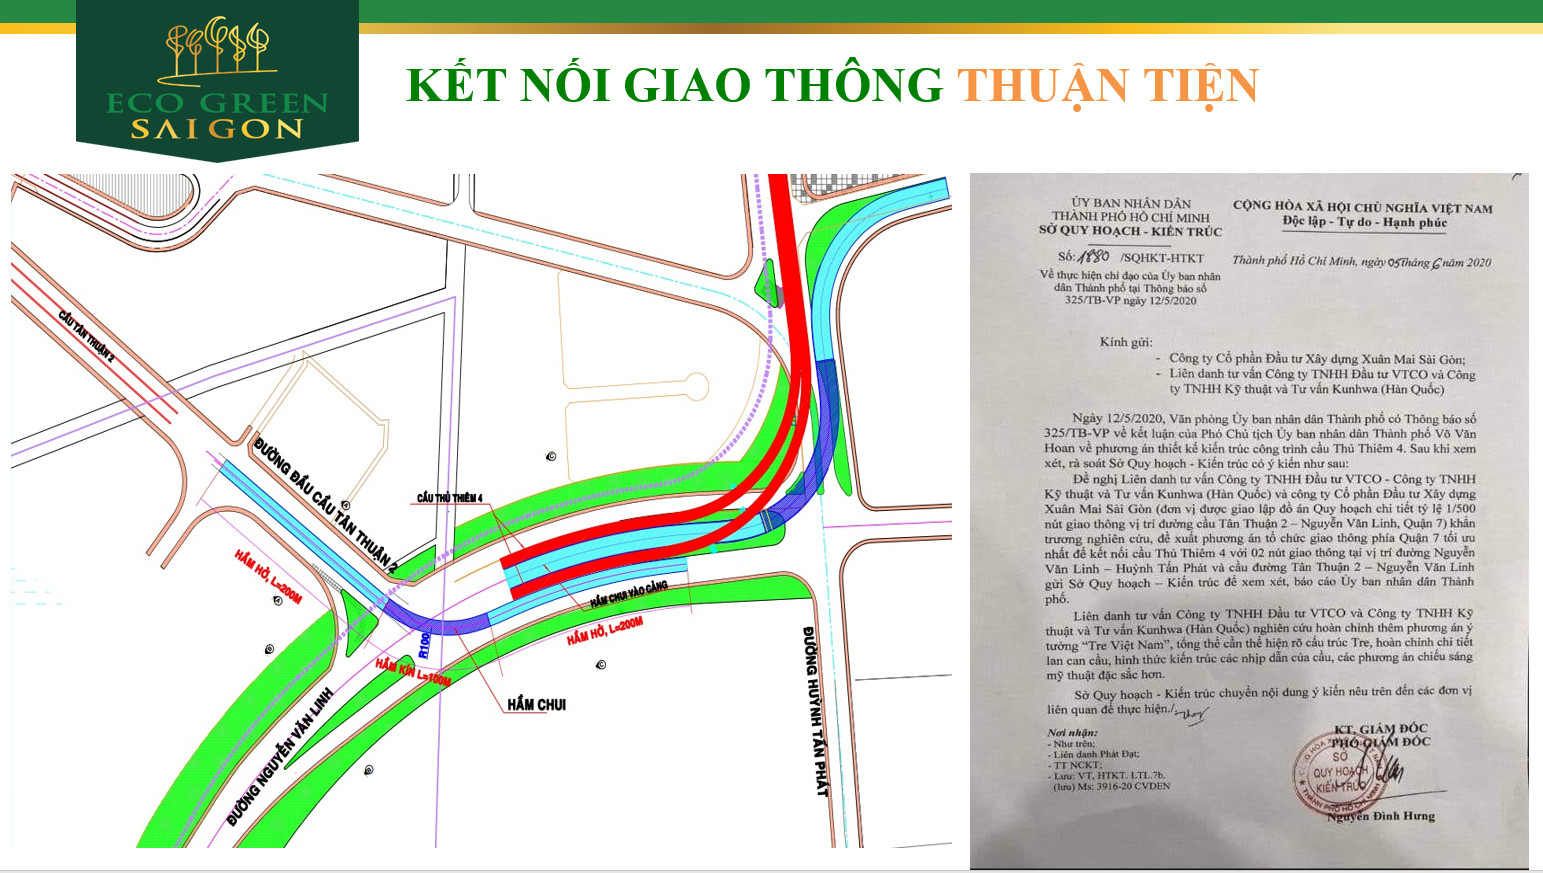 Nút giao thông Hầm chui, Cầu vượt ngay dự án Eco Green Sài Gòn.